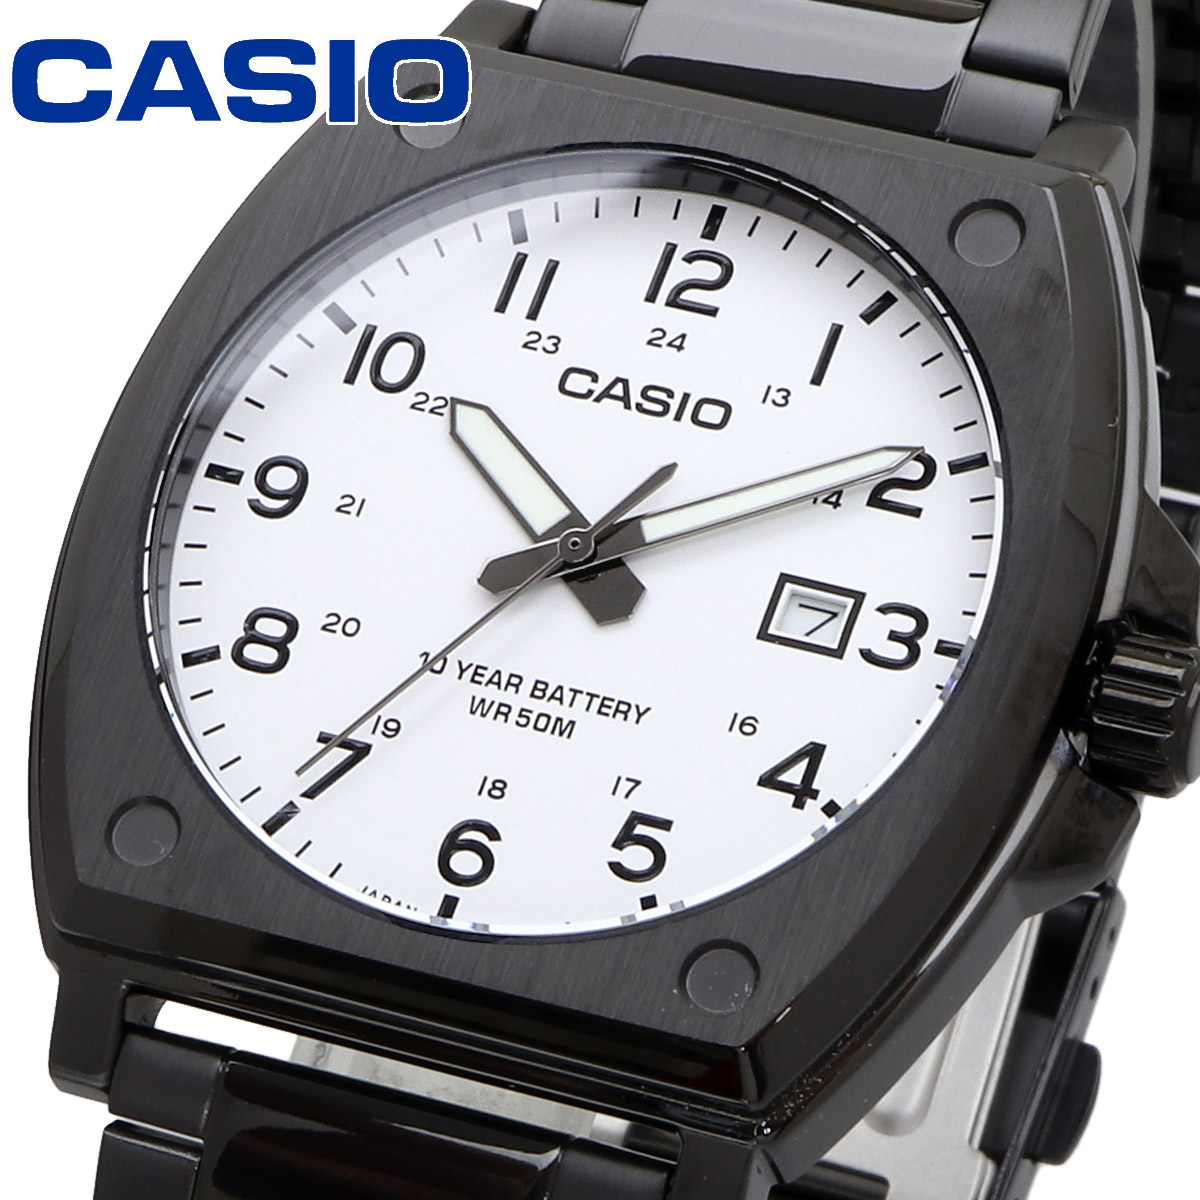 CASIO カシオ 腕時計 メンズ チープカシオ チプカシ 海外モデル シンプル ミリタリー MTP-E715D-7AV